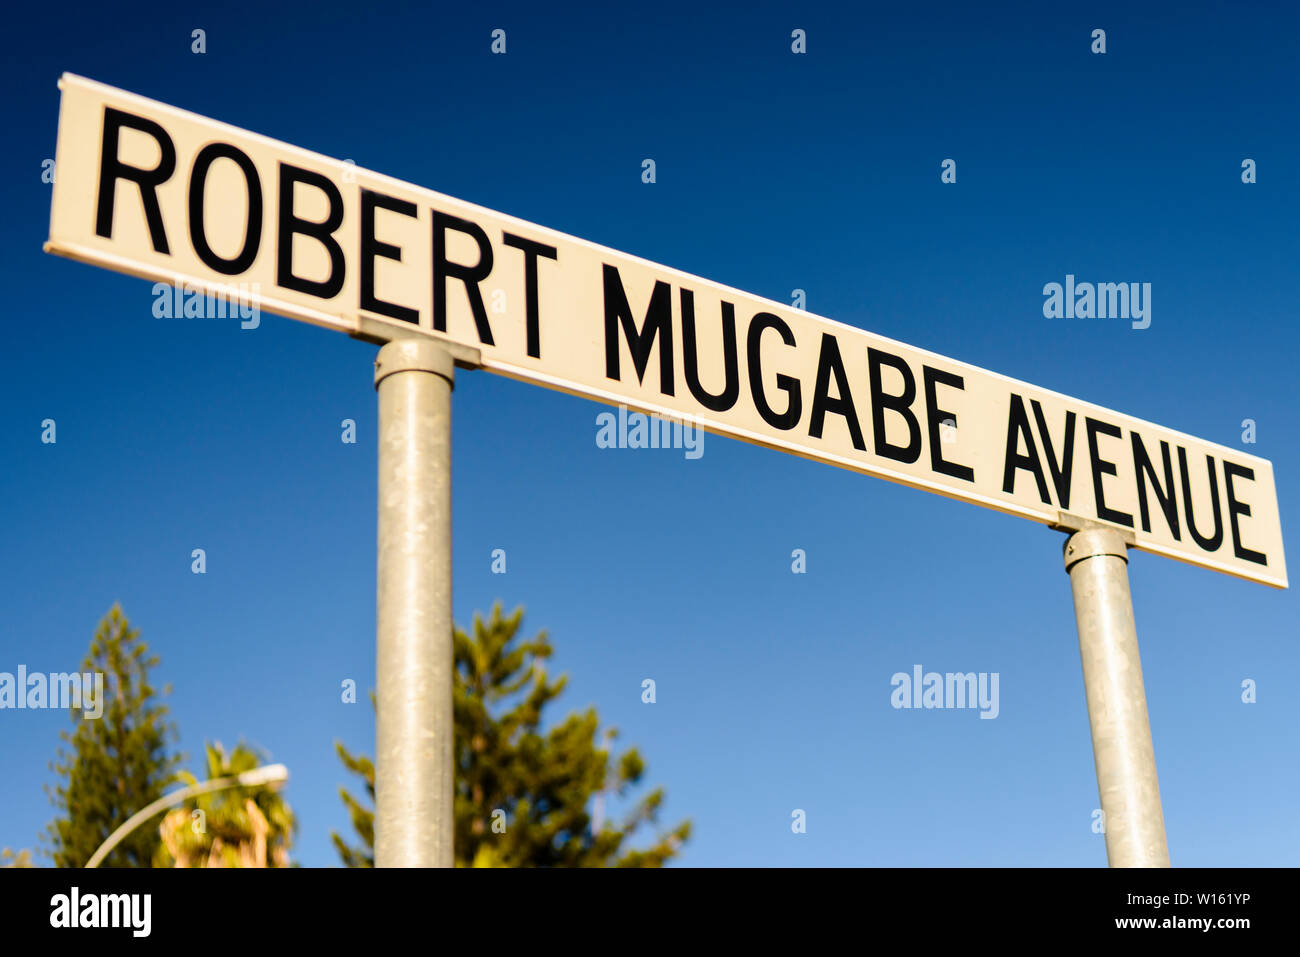 Robert Mugabe Avenue, Windhoek, Namibia Stock Photo